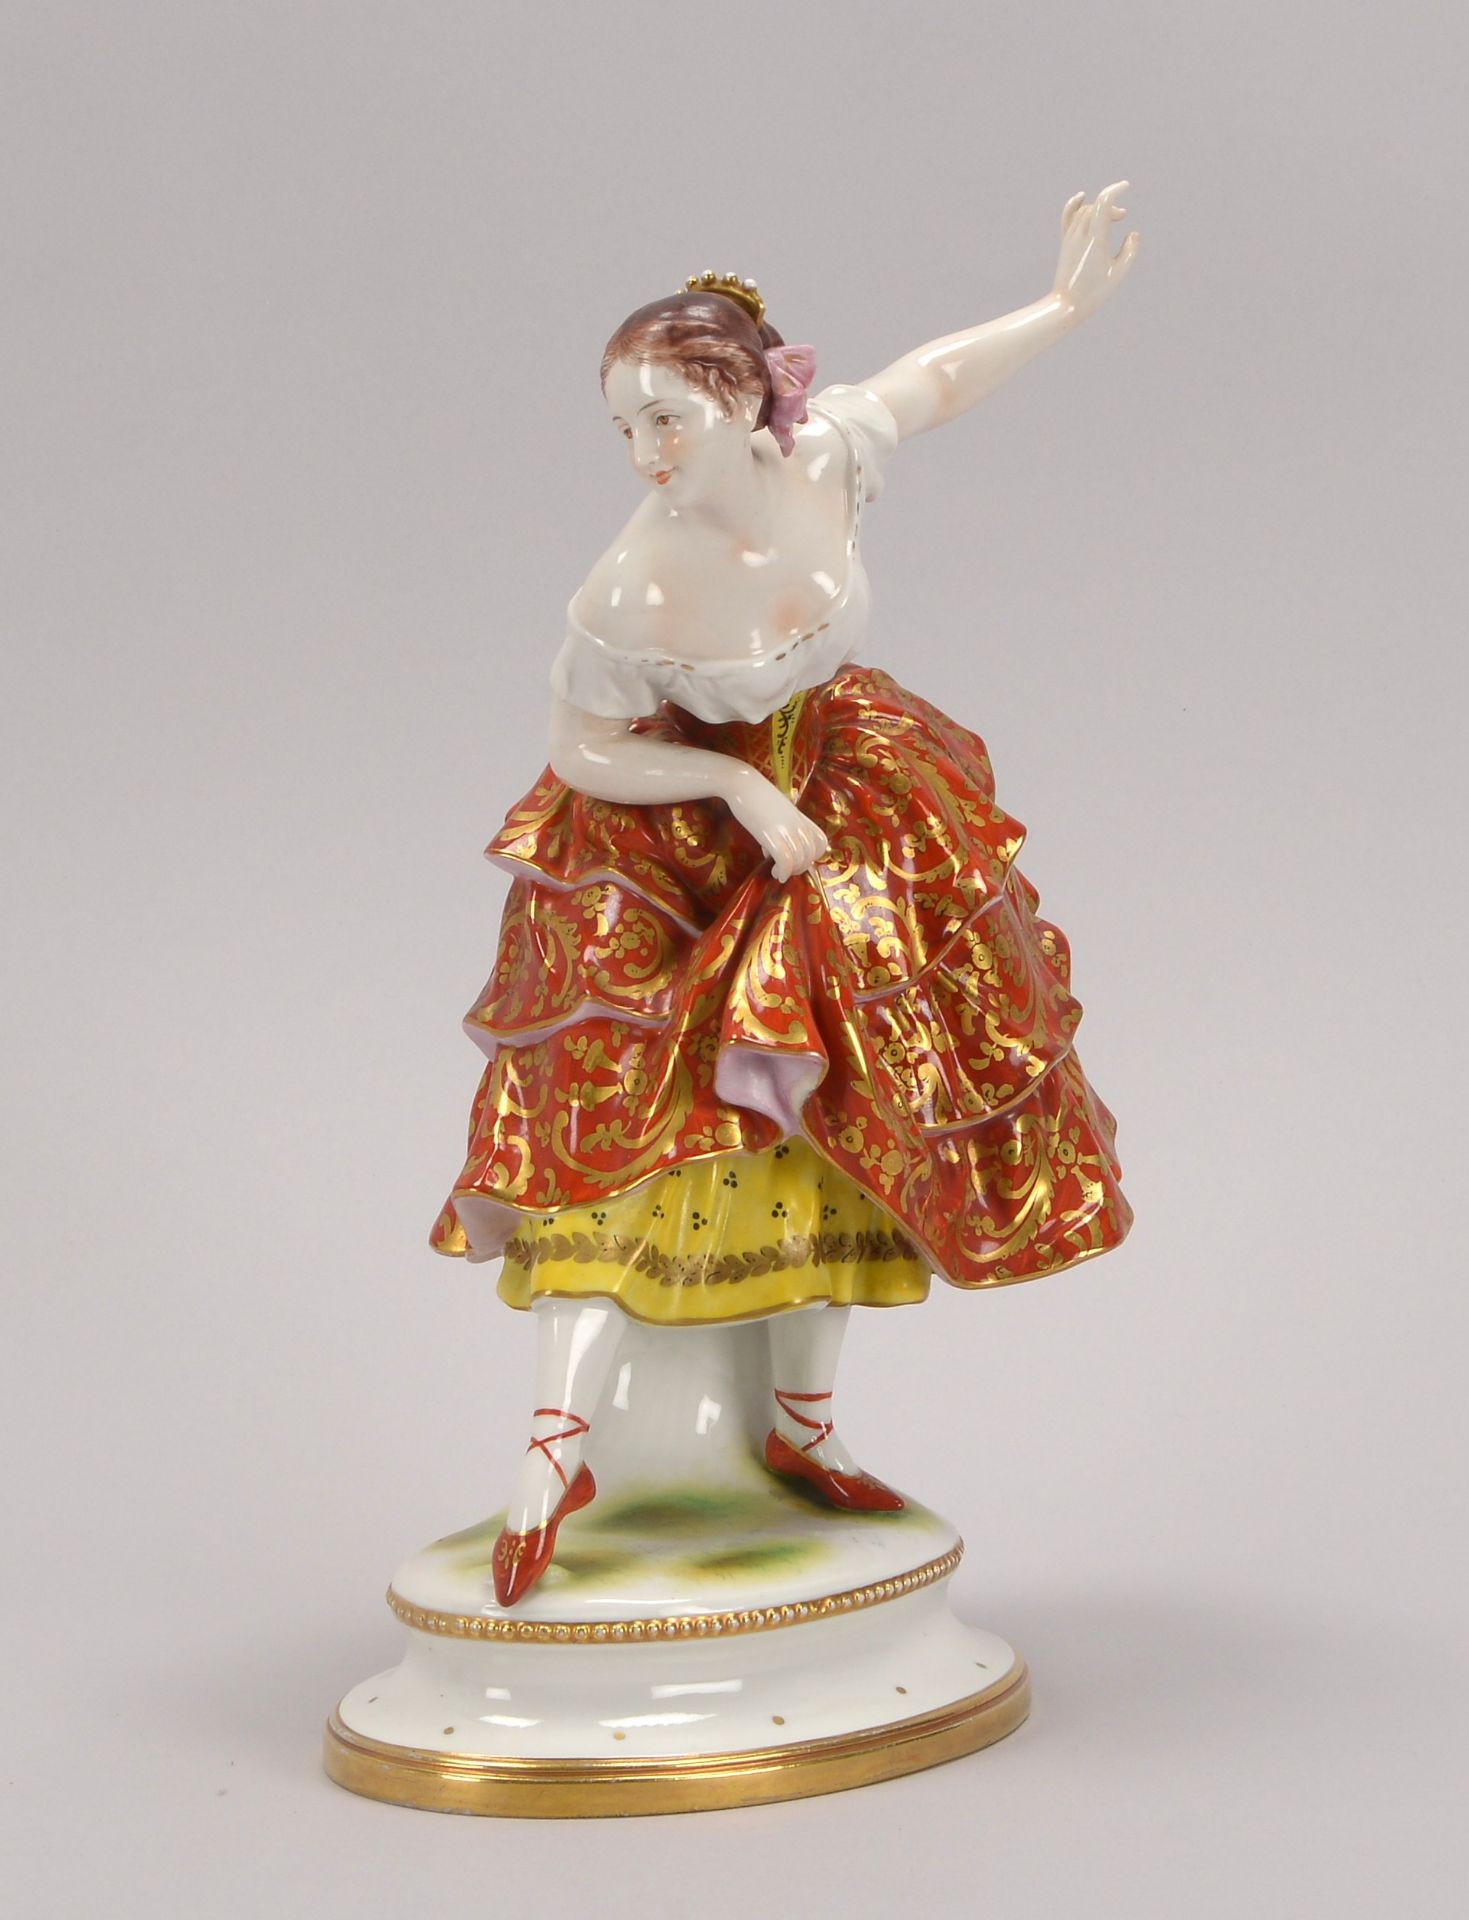 Volkstedt, Porzellanfigur, -Taenzerin-, mit polychromer Bemalung, partiell vergoldet, Hoehe 29,7 cm